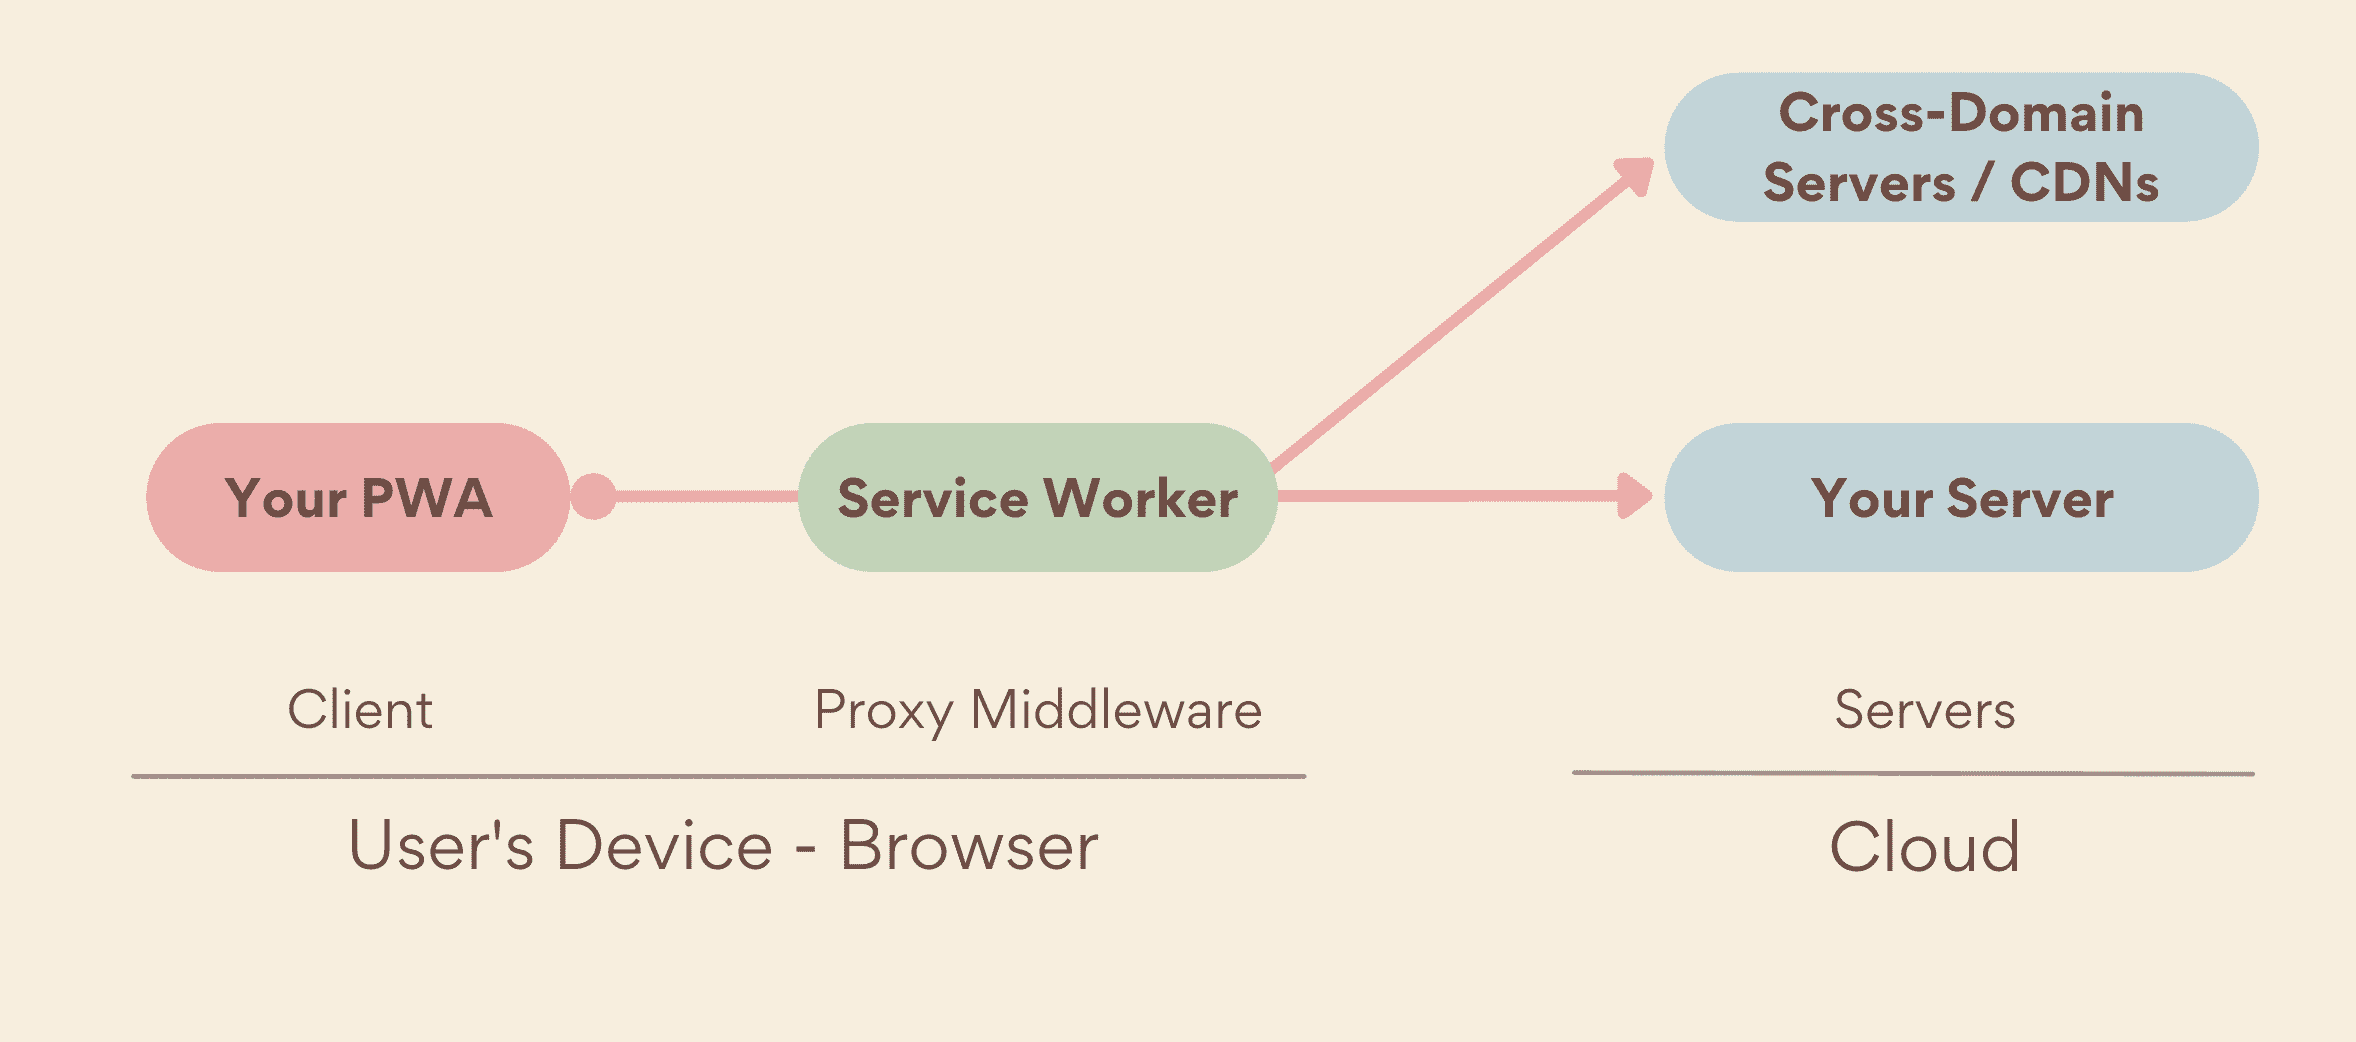 Un service worker come proxy middleware, in esecuzione sul lato dispositivo, tra la PWA e i server, che includono sia i tuoi server sia i server interdominio.